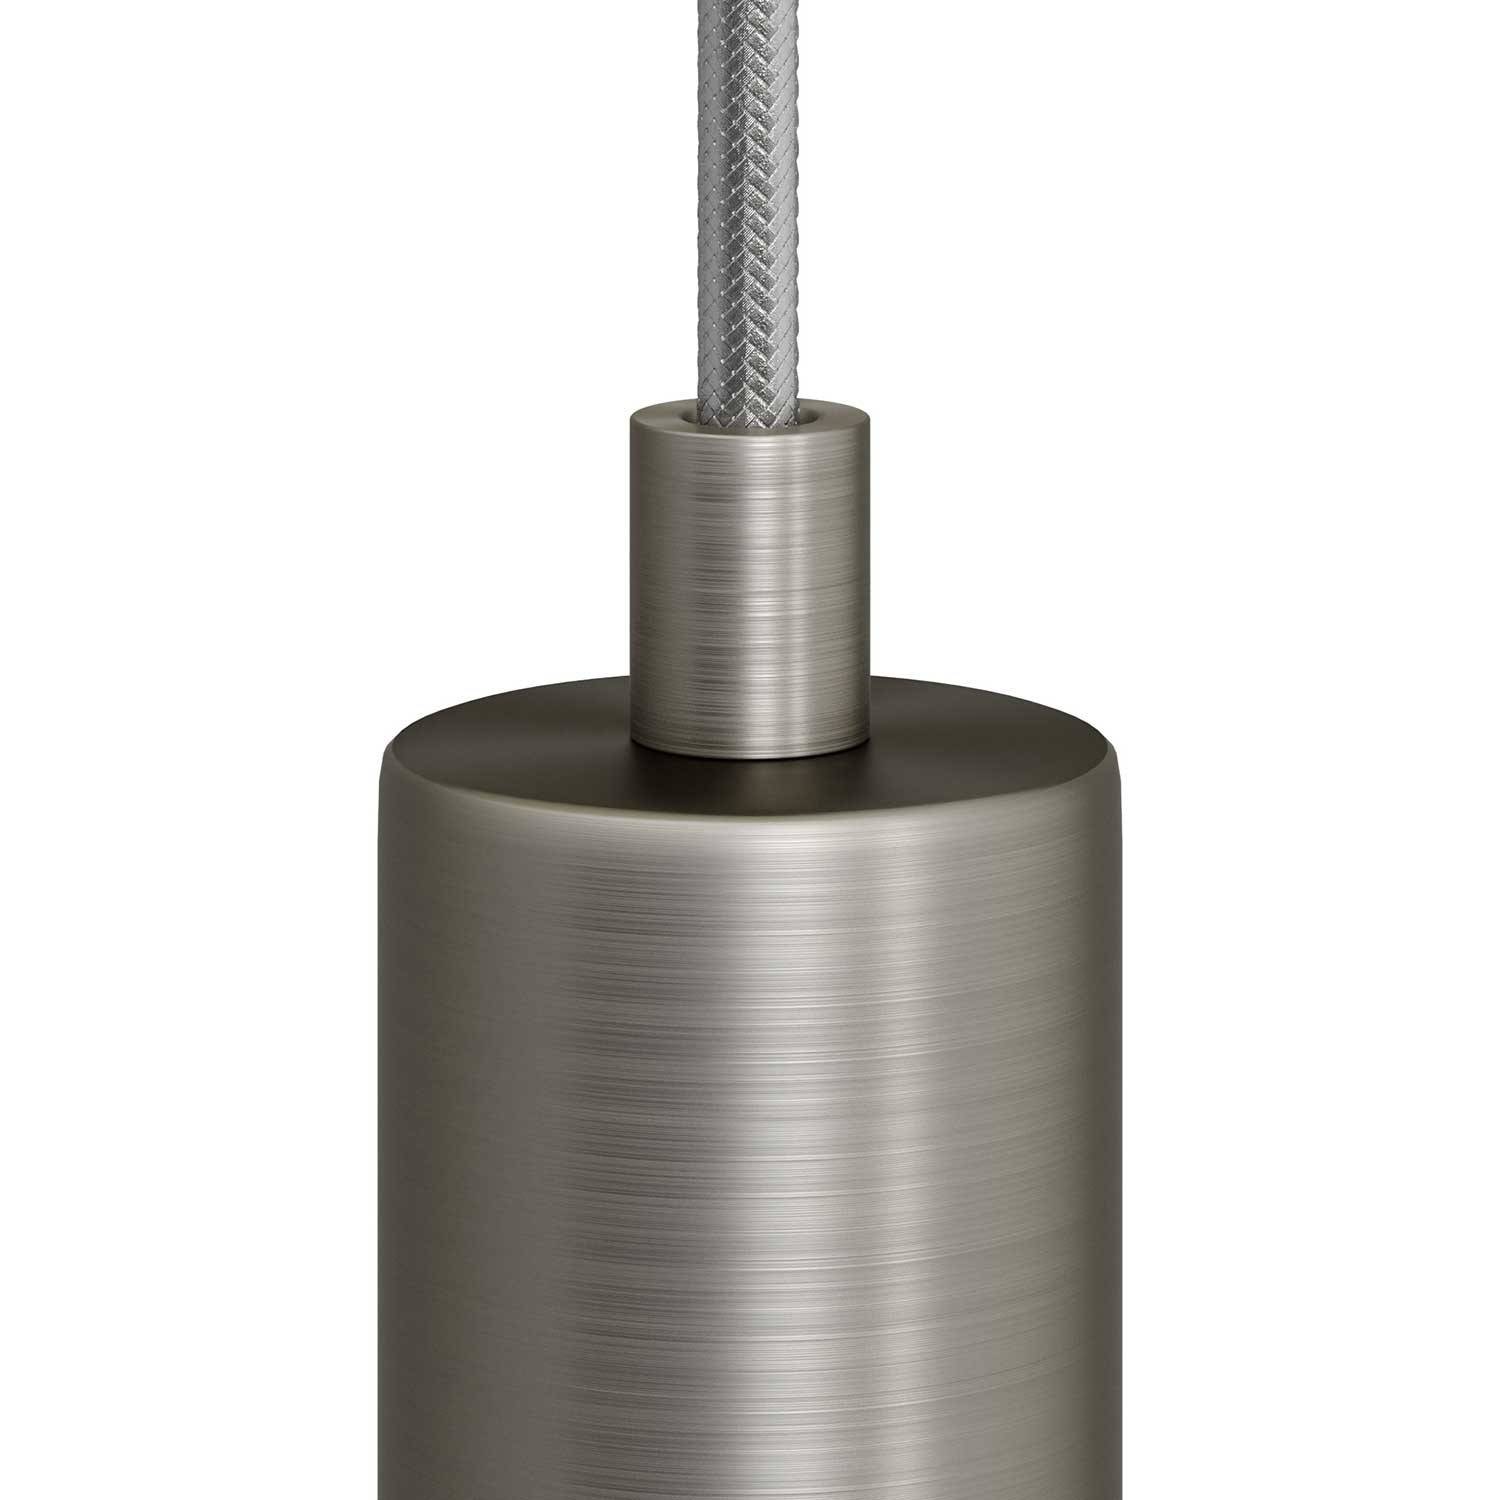 Válcová kovová kabelová průchodka se závitovou tyčkou, maticí a podložkou - 2 ks